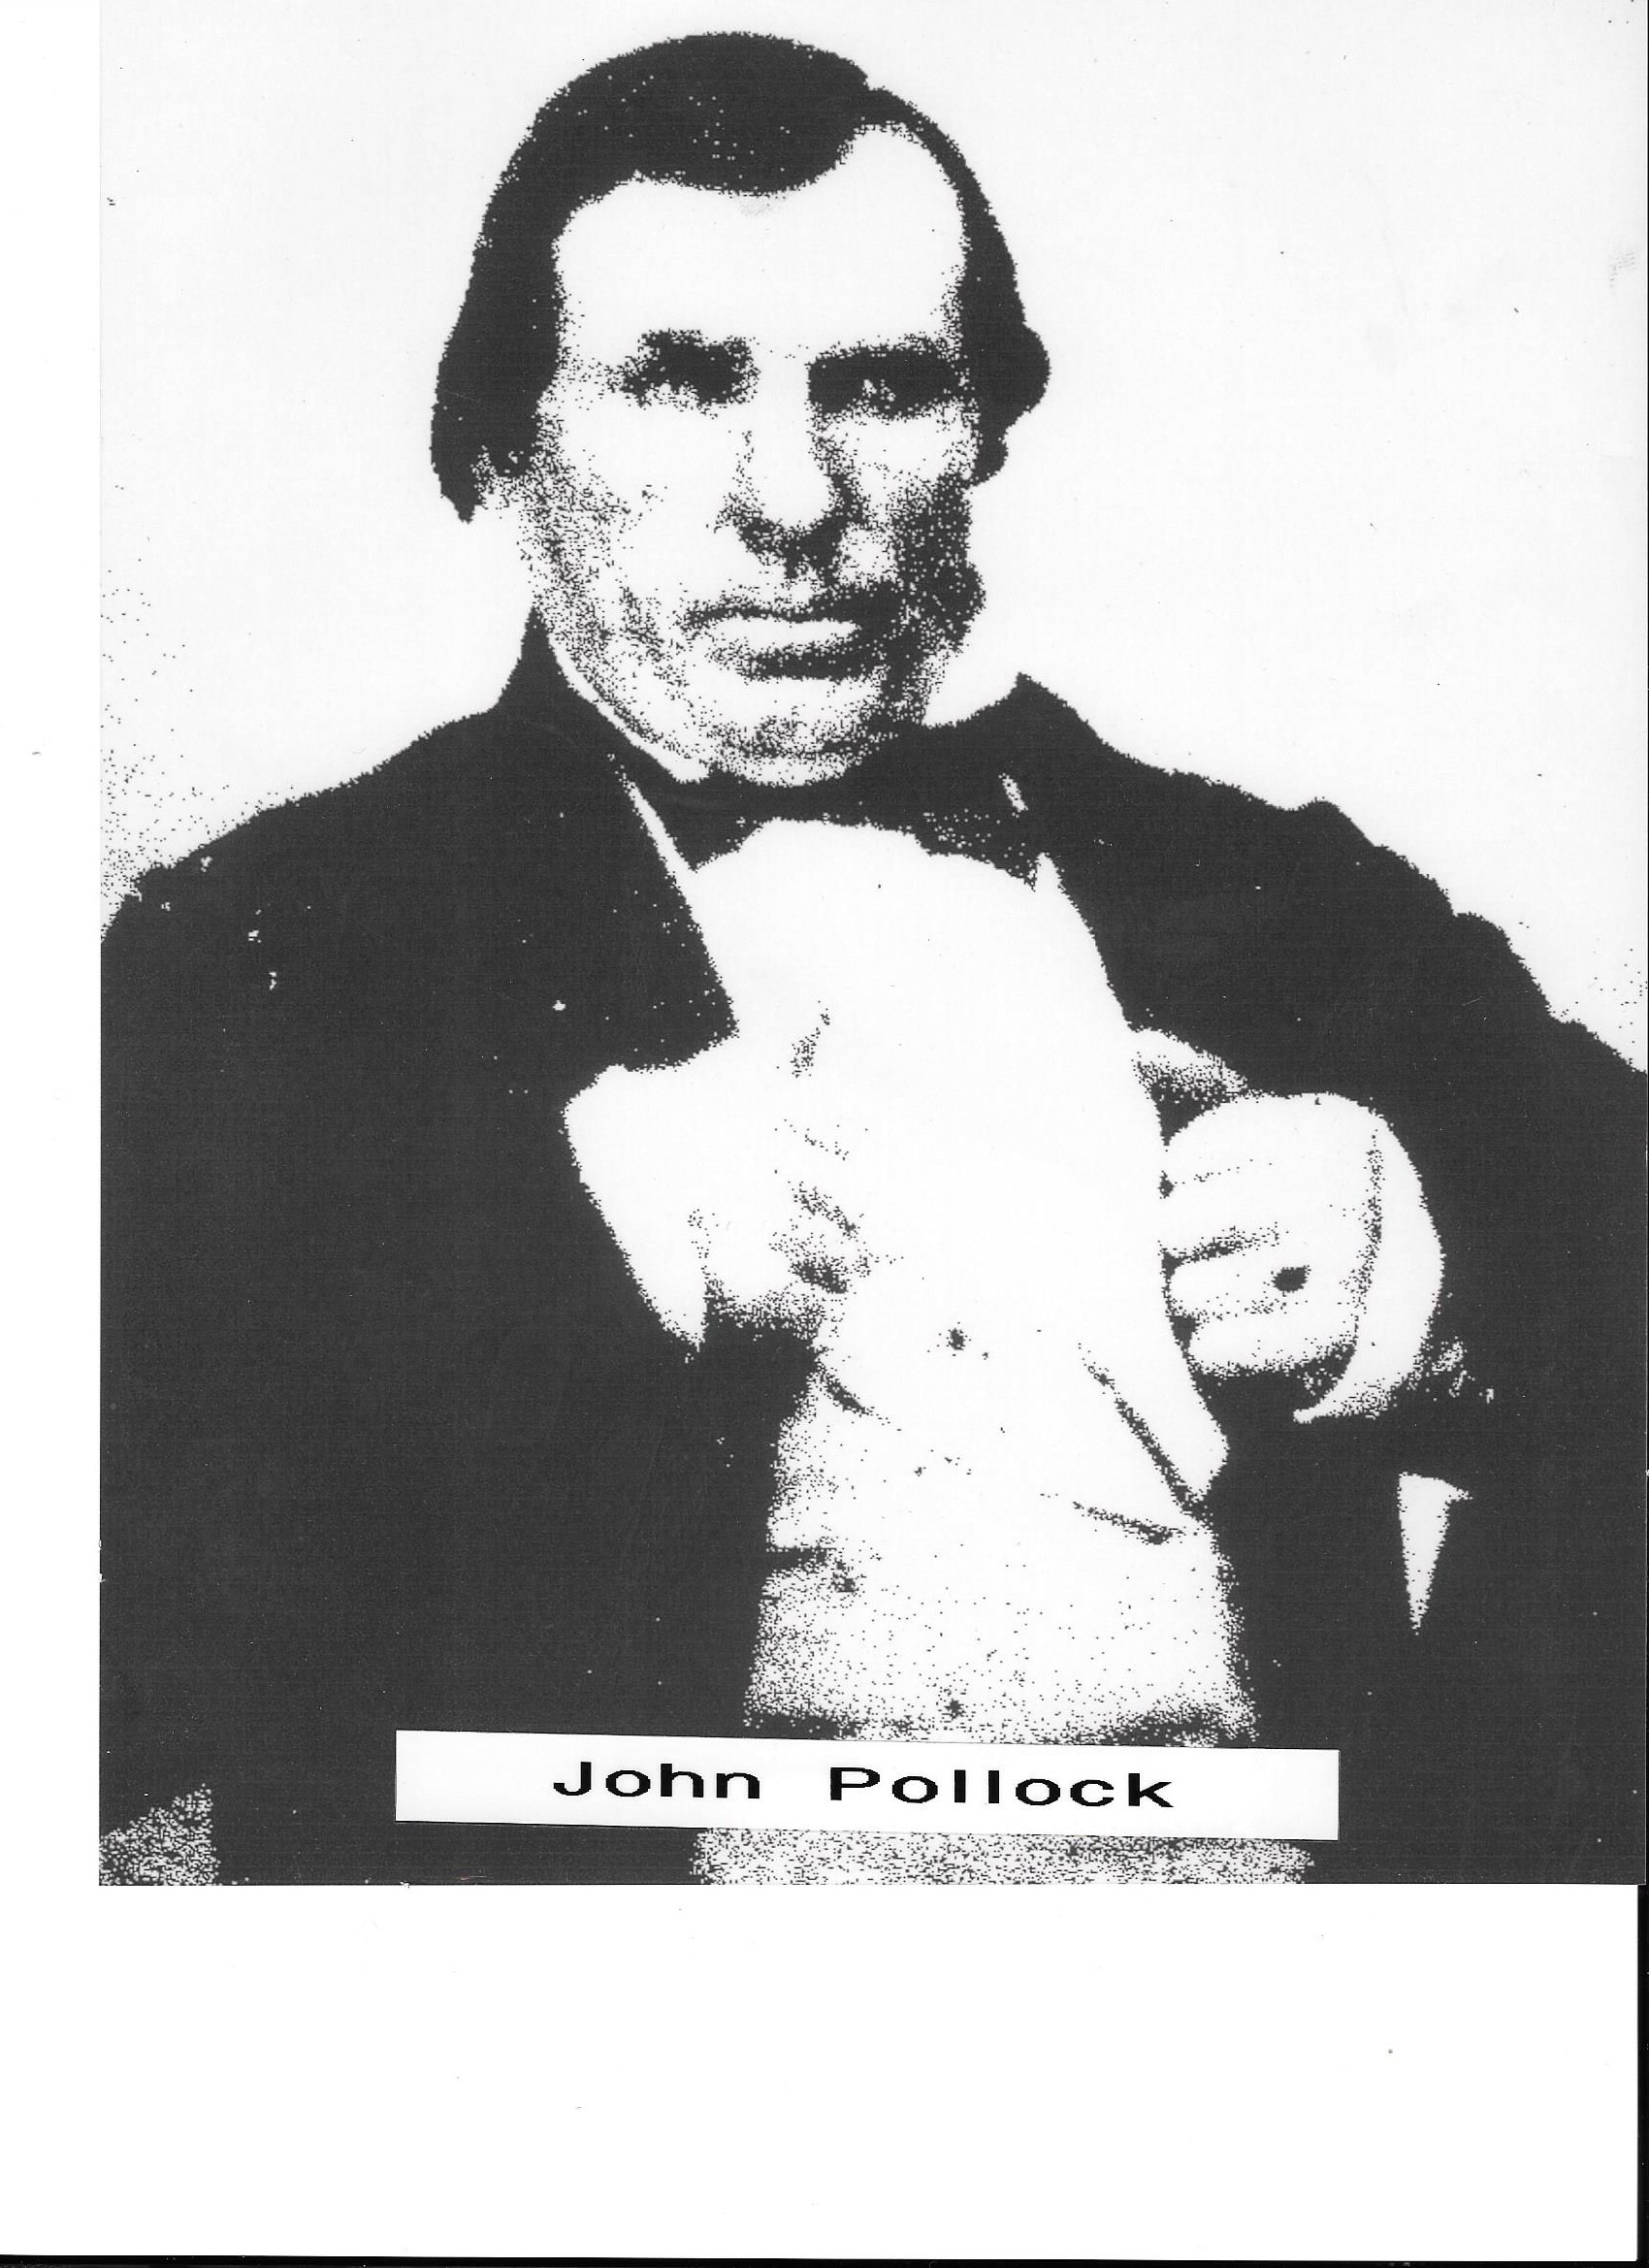 John Pollock